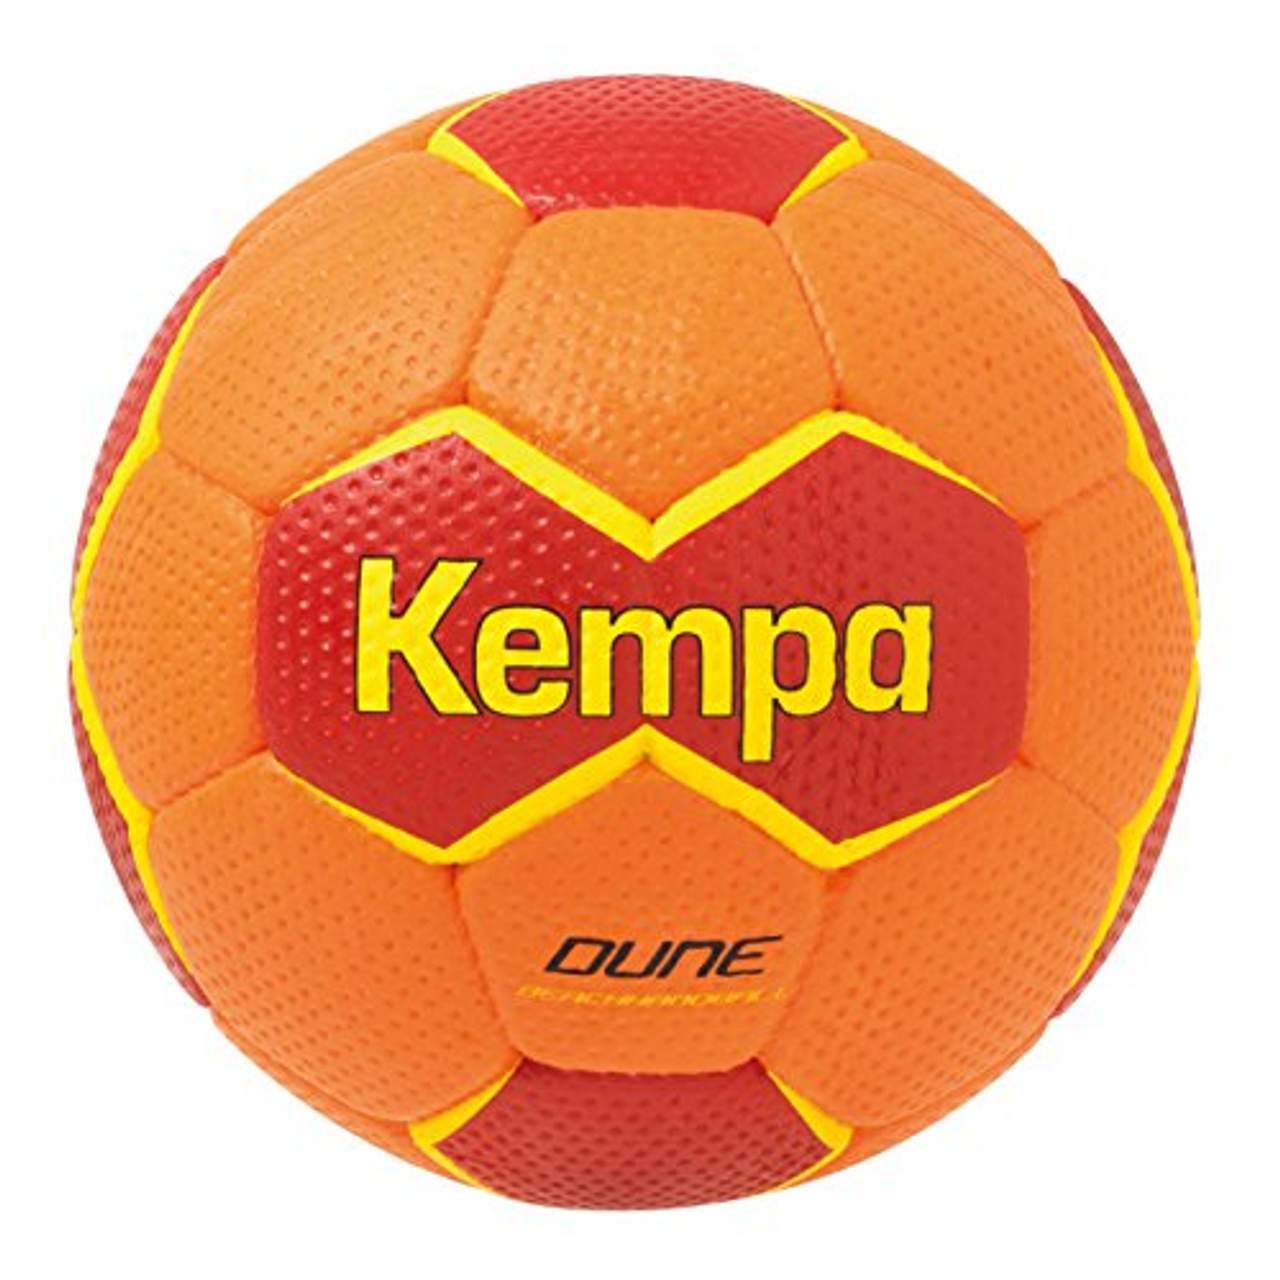 Kempa Dune Handball shockred